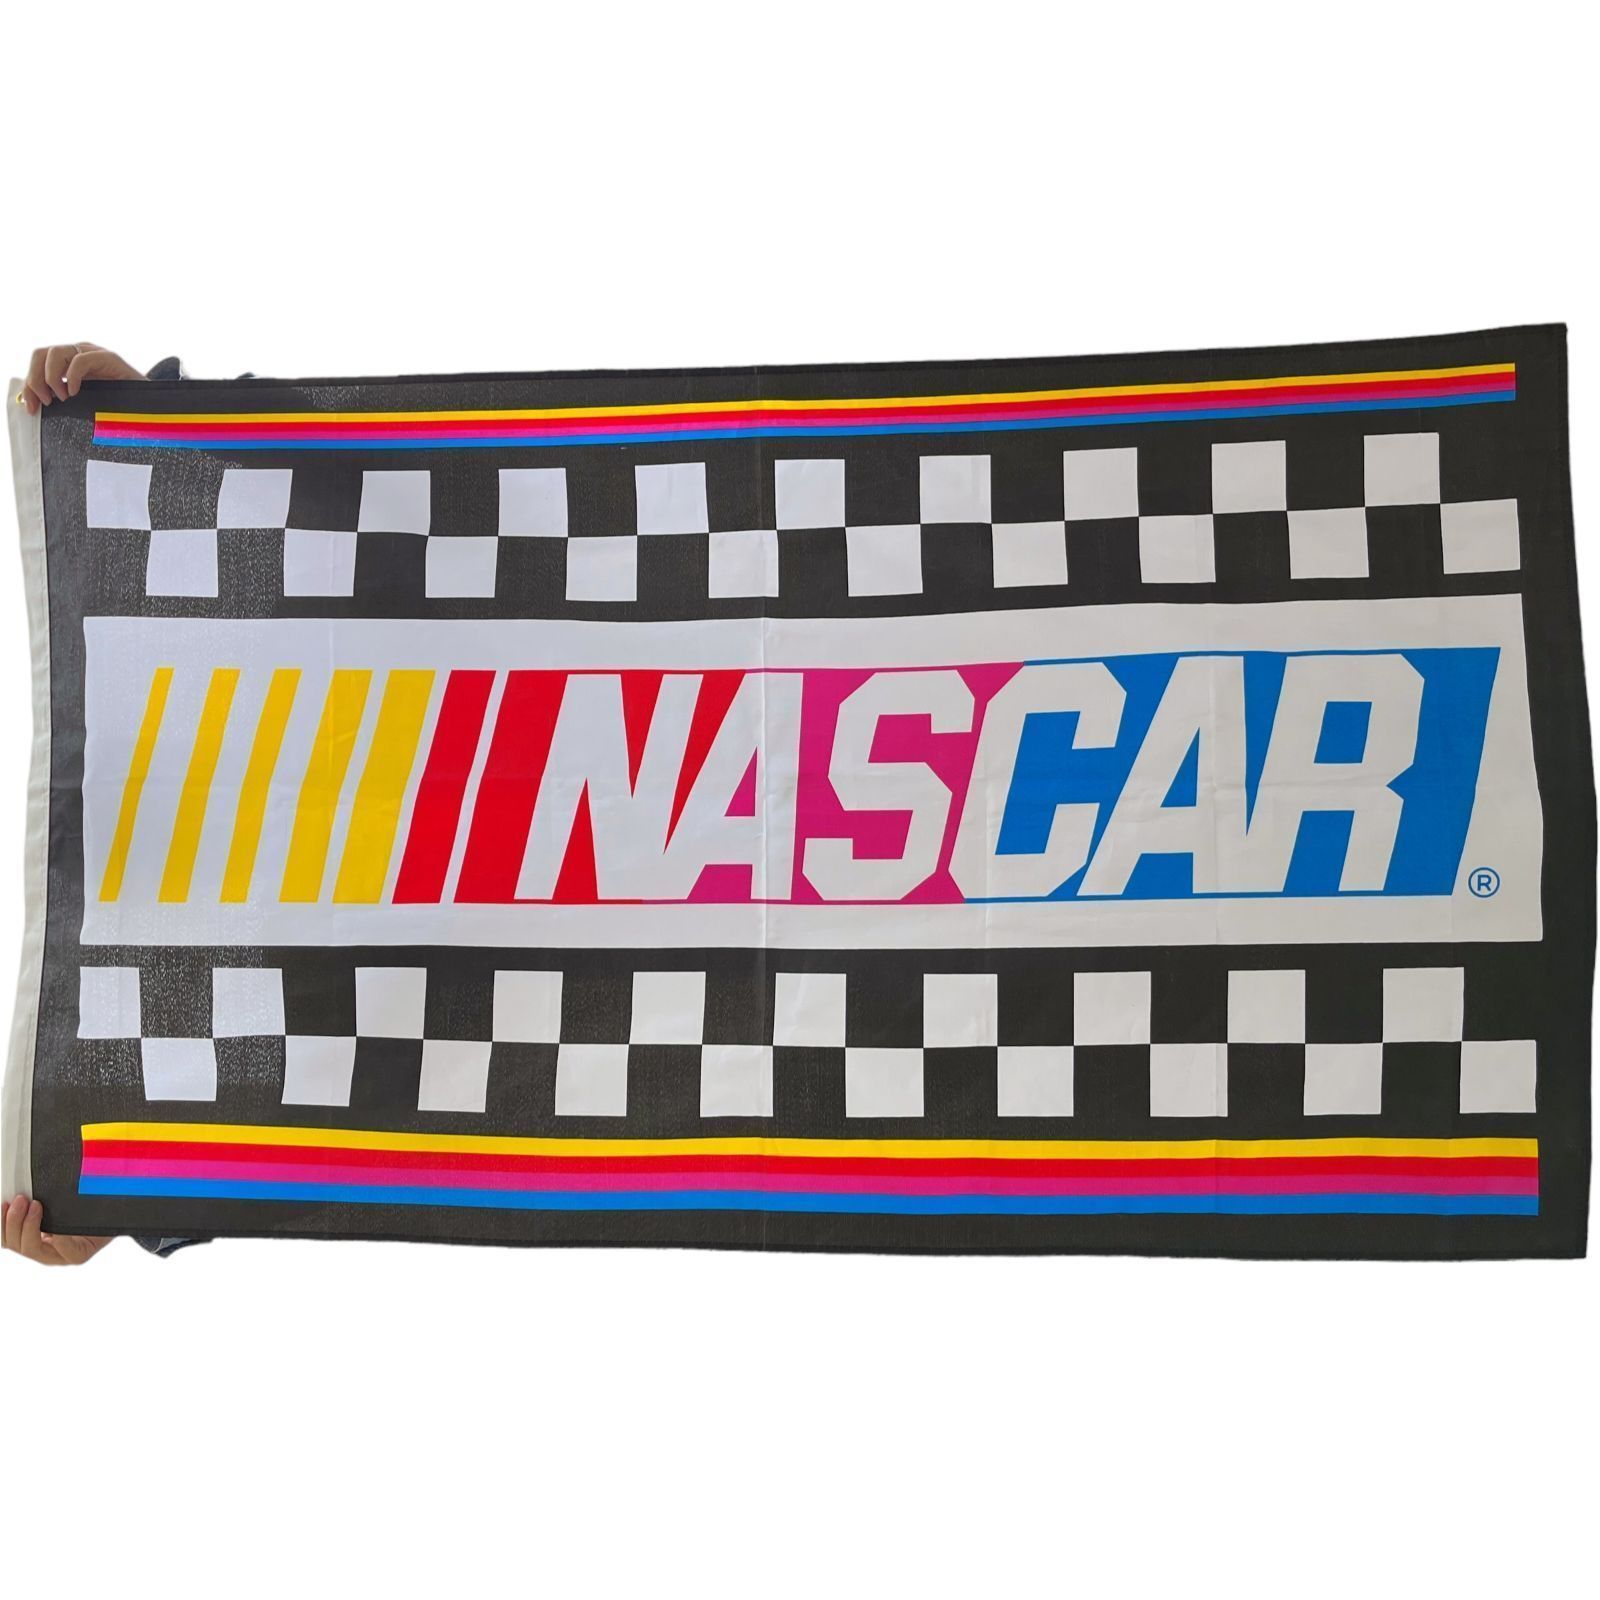 買いオンライン 【フラッグ 旗】ビッグサイズ! NASCAR マルチカラーフラッグ ディスプレイ 店舗什器